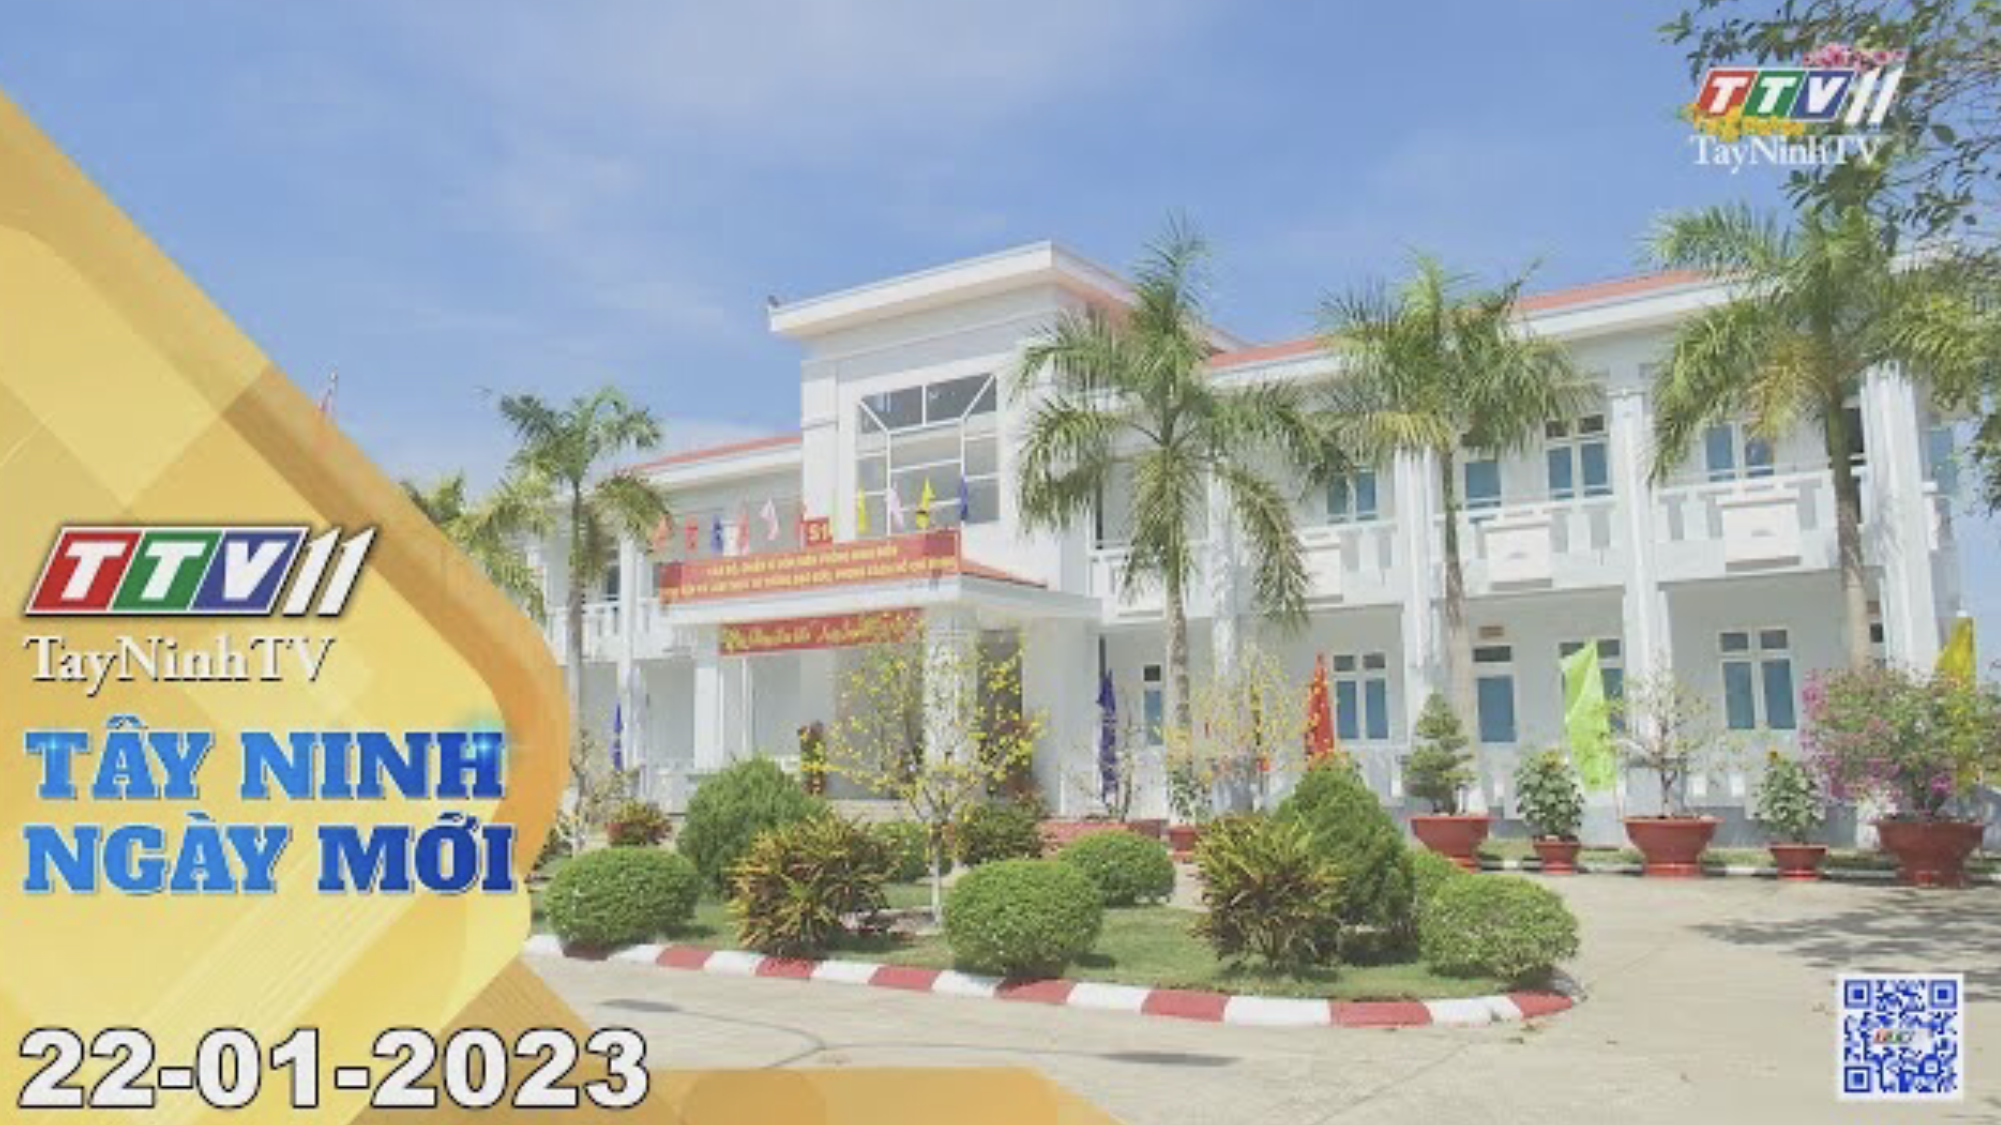 Tây Ninh ngày mới 22-01-2023 | Tin tức hôm nay | TayNinhTV